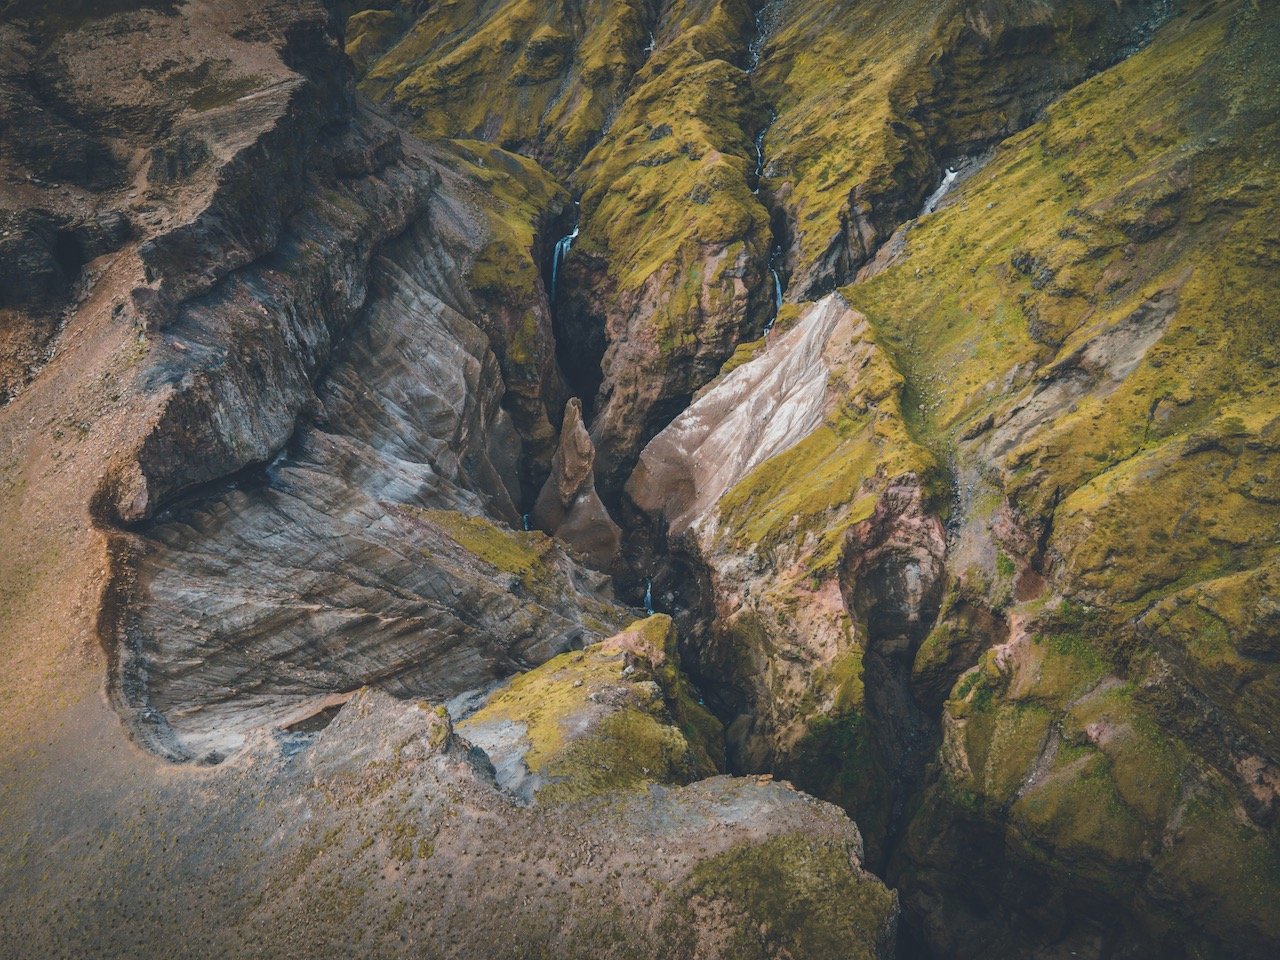   Múlagljúfur Canyon, Iceland (ISO 100, 4.5 mm,  f /2.8, 1/40 s)  